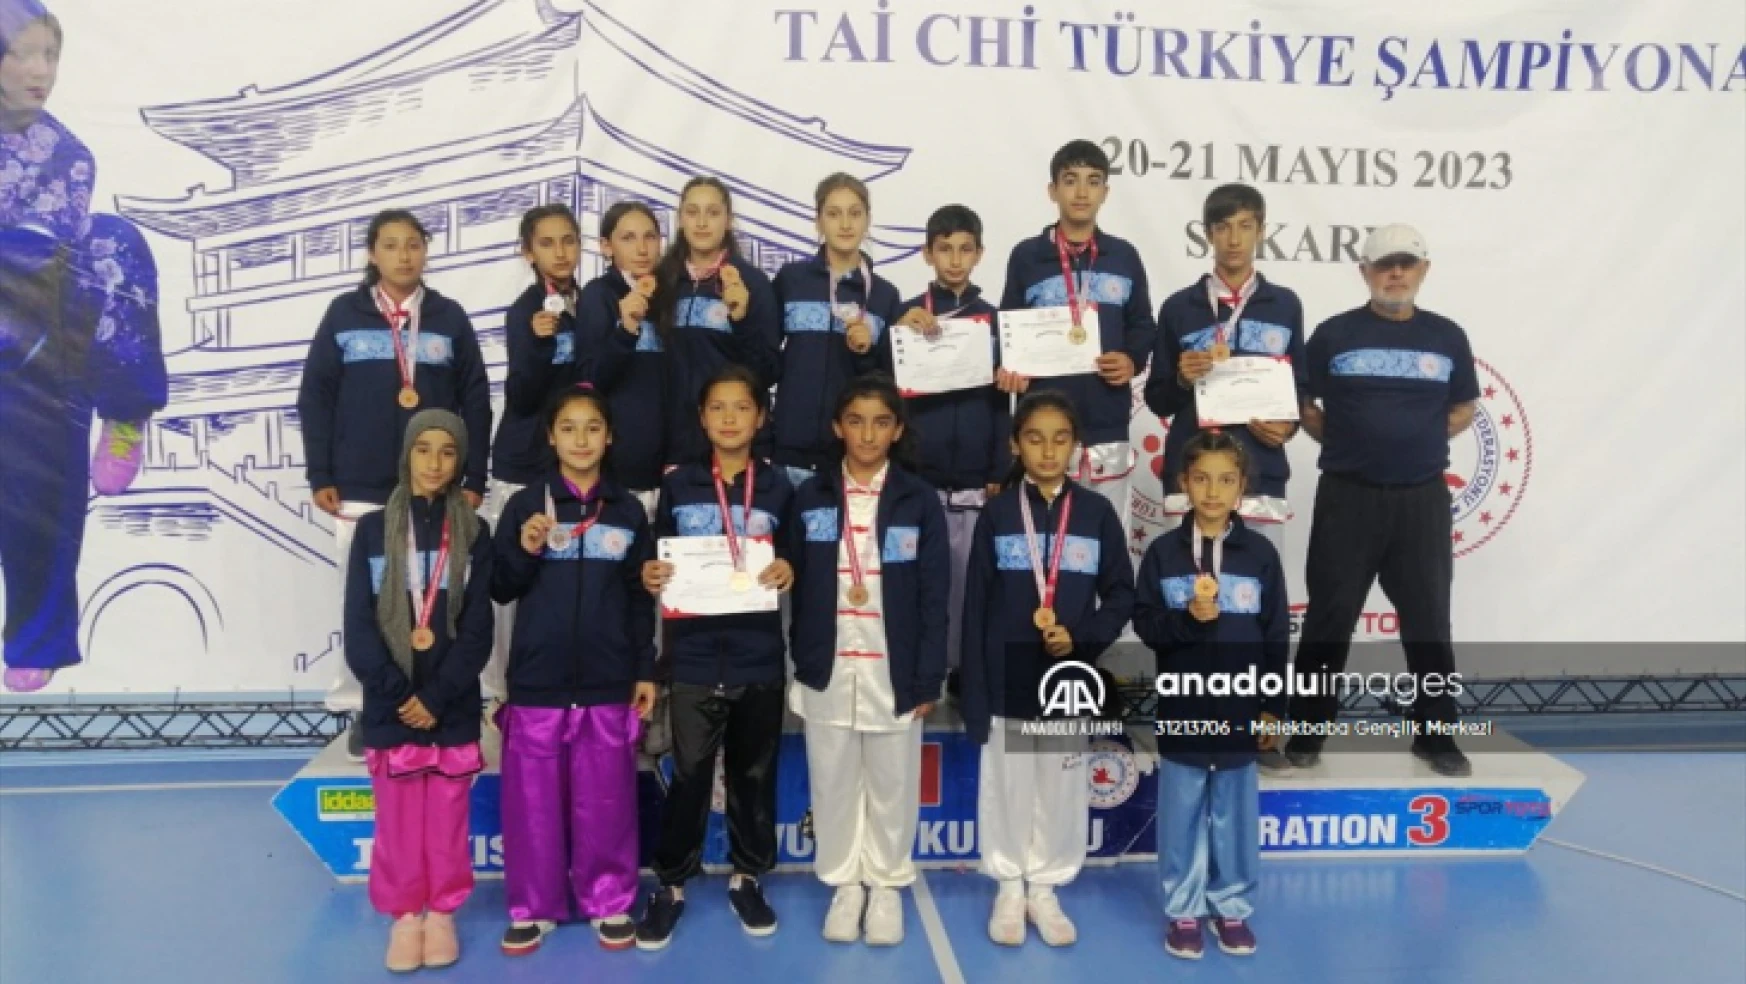 Malatyalı sporcular, Tai Chi Türkiye Şampiyonası'ndan 12 madalyayla döndü